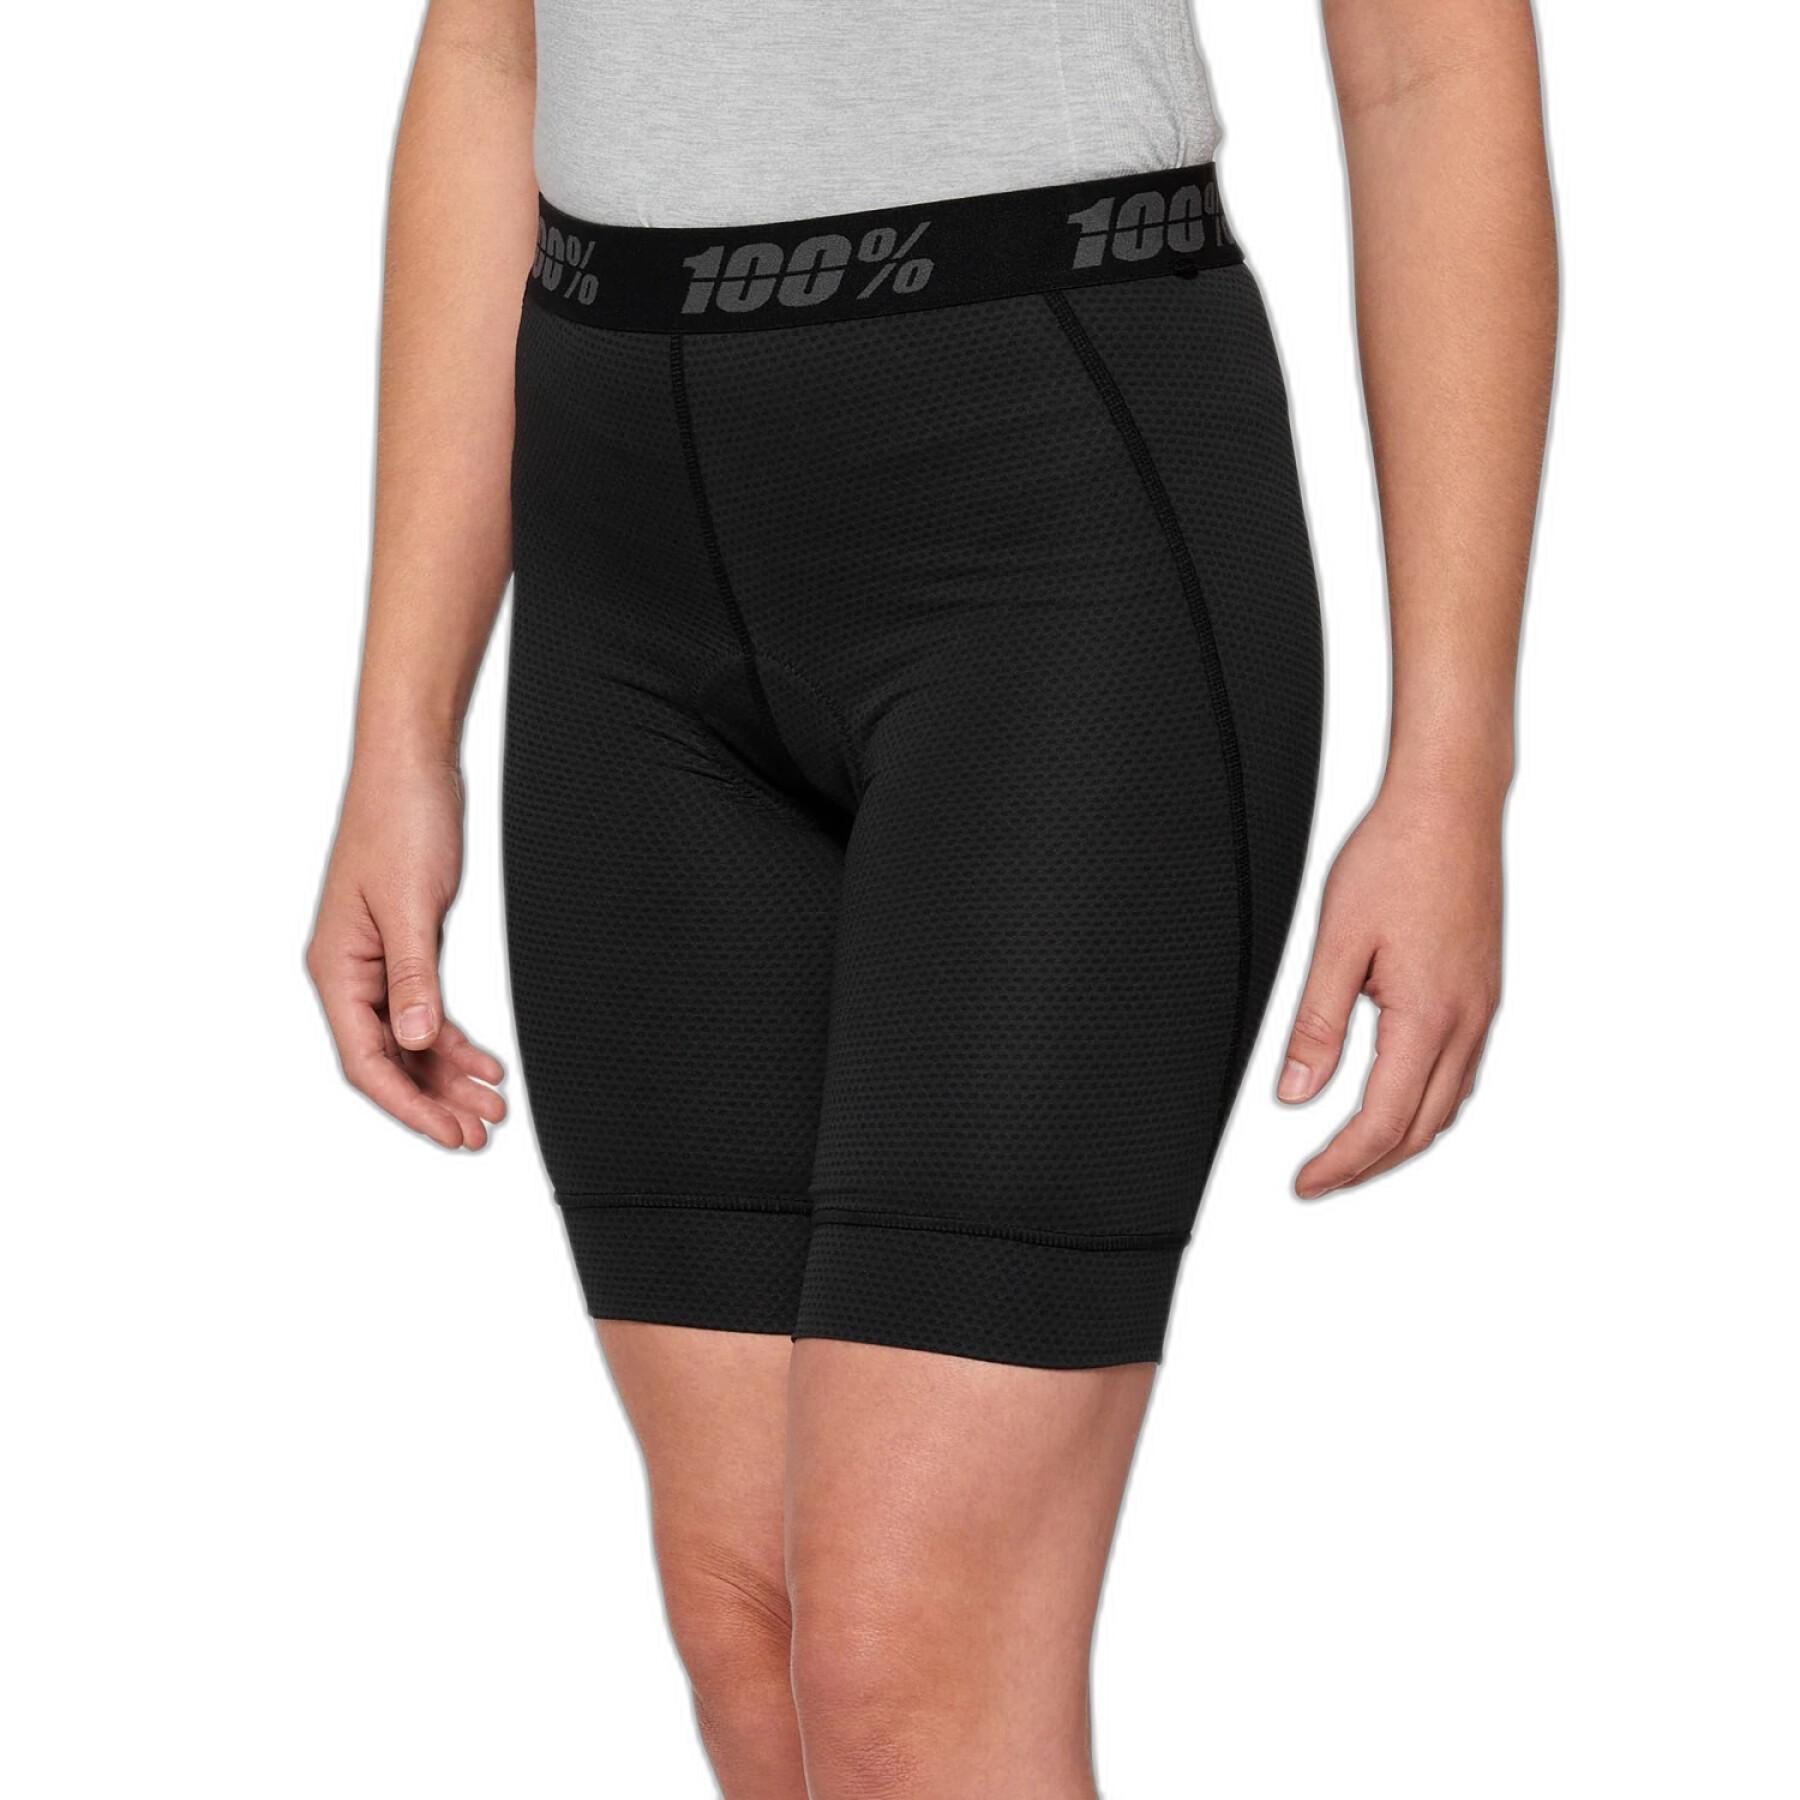 Pantalón corto de mujer 100% ridecamp Liner